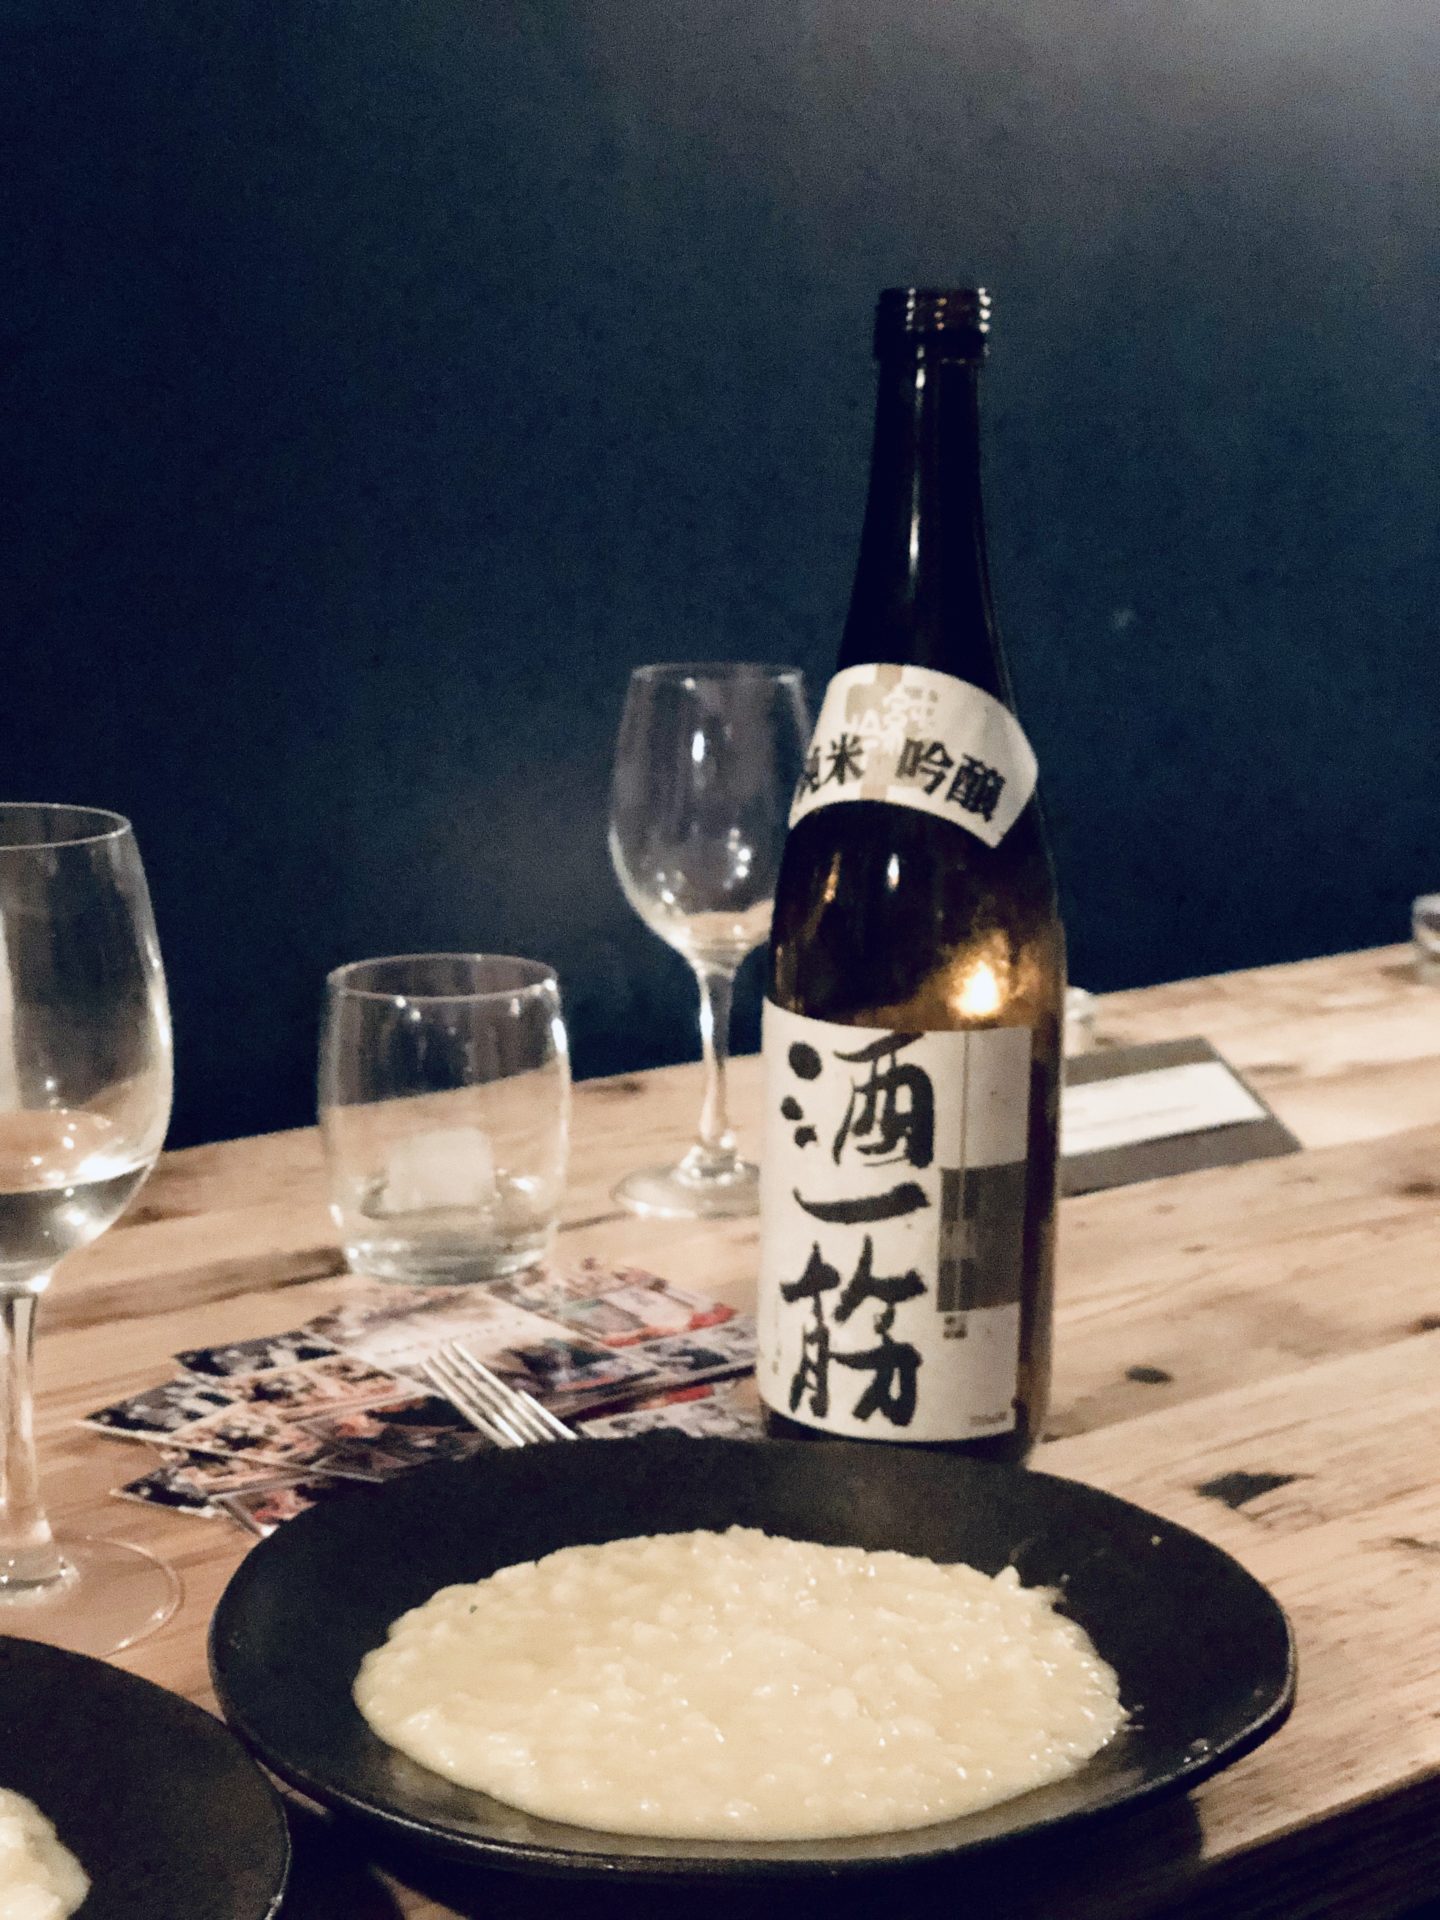 Sakenoteca, London, sake and Italian food pairing in London